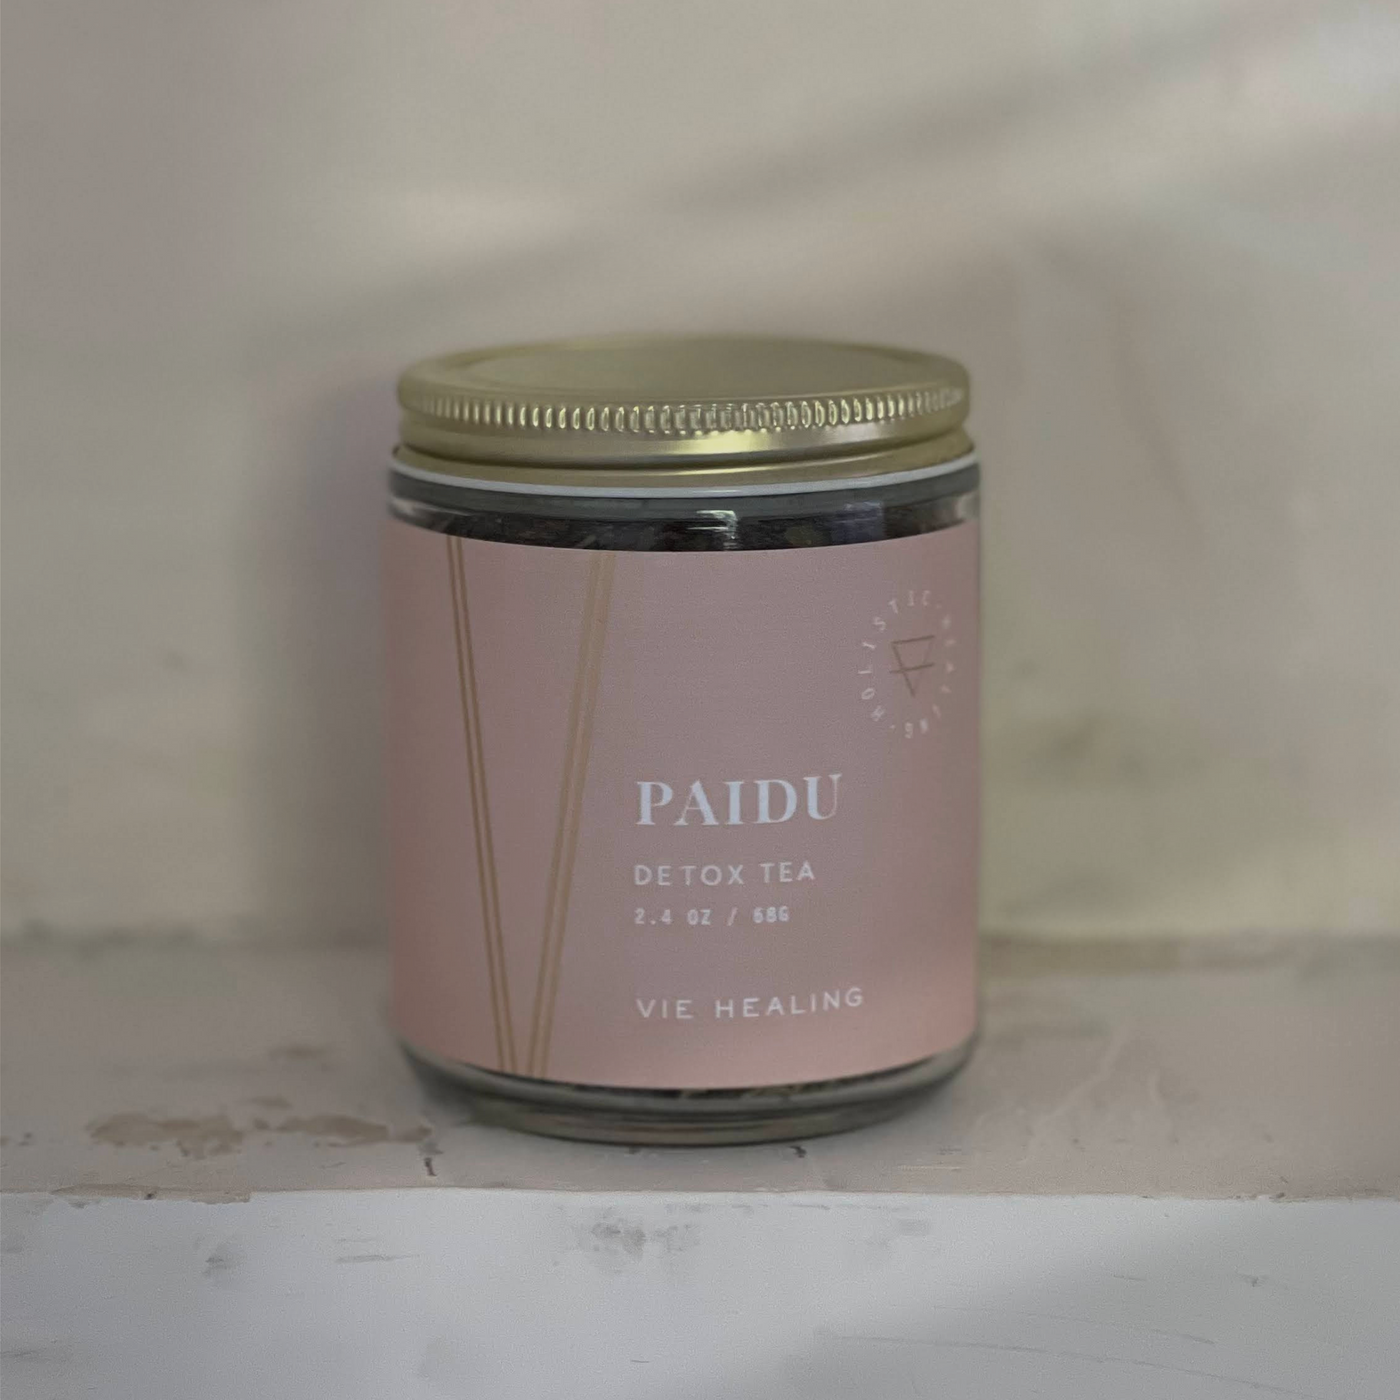 PAIDU Pairing (Tea + Supplements)